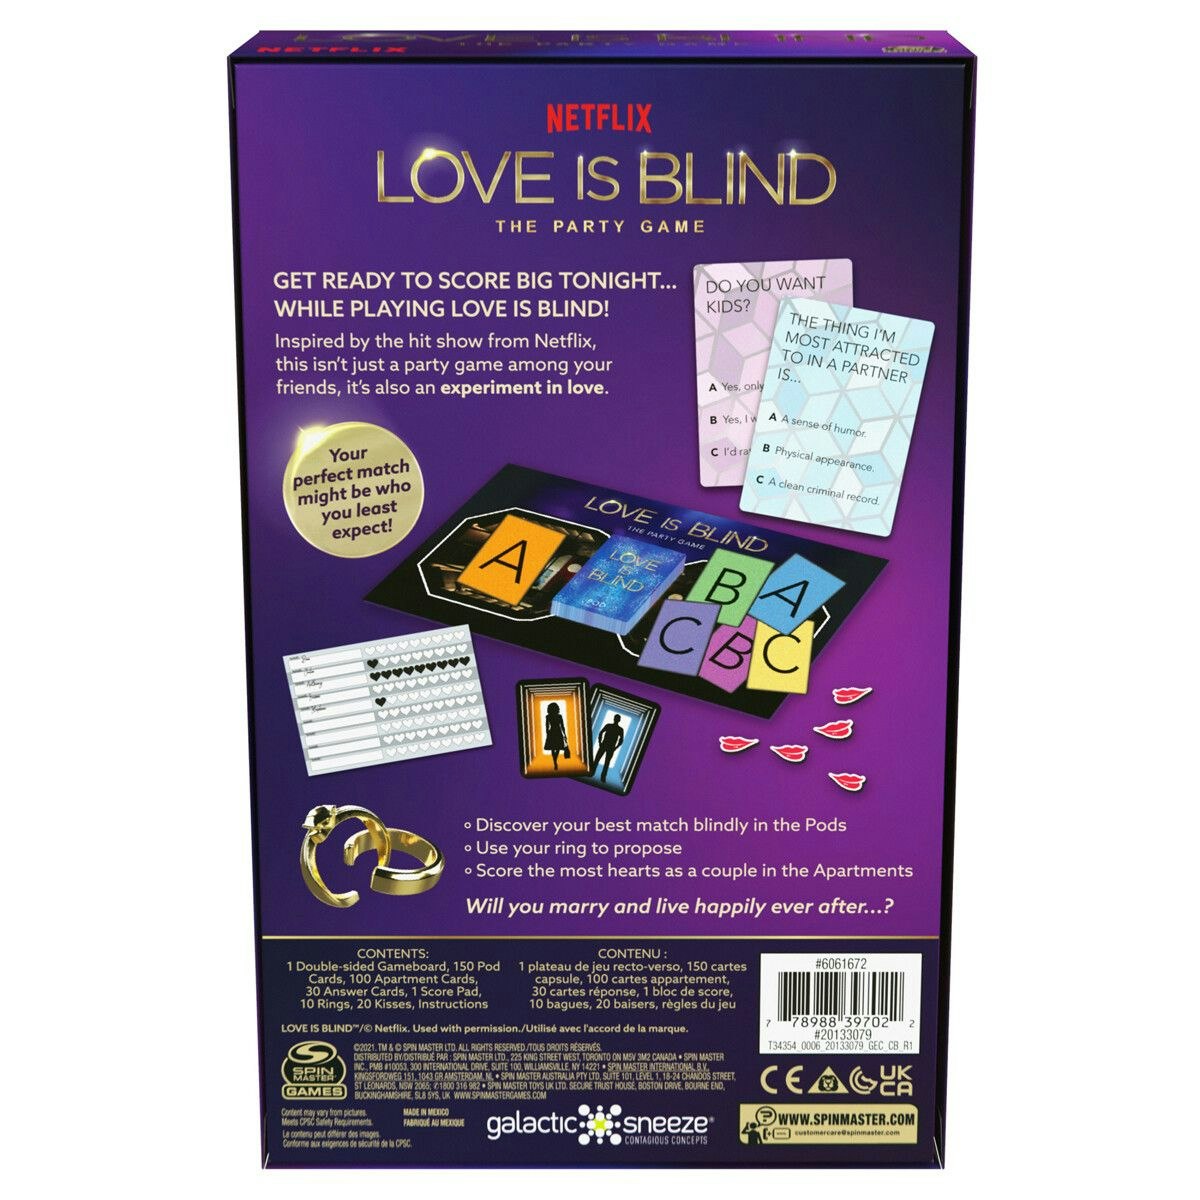 Love is Blind (Engelsk utgave)